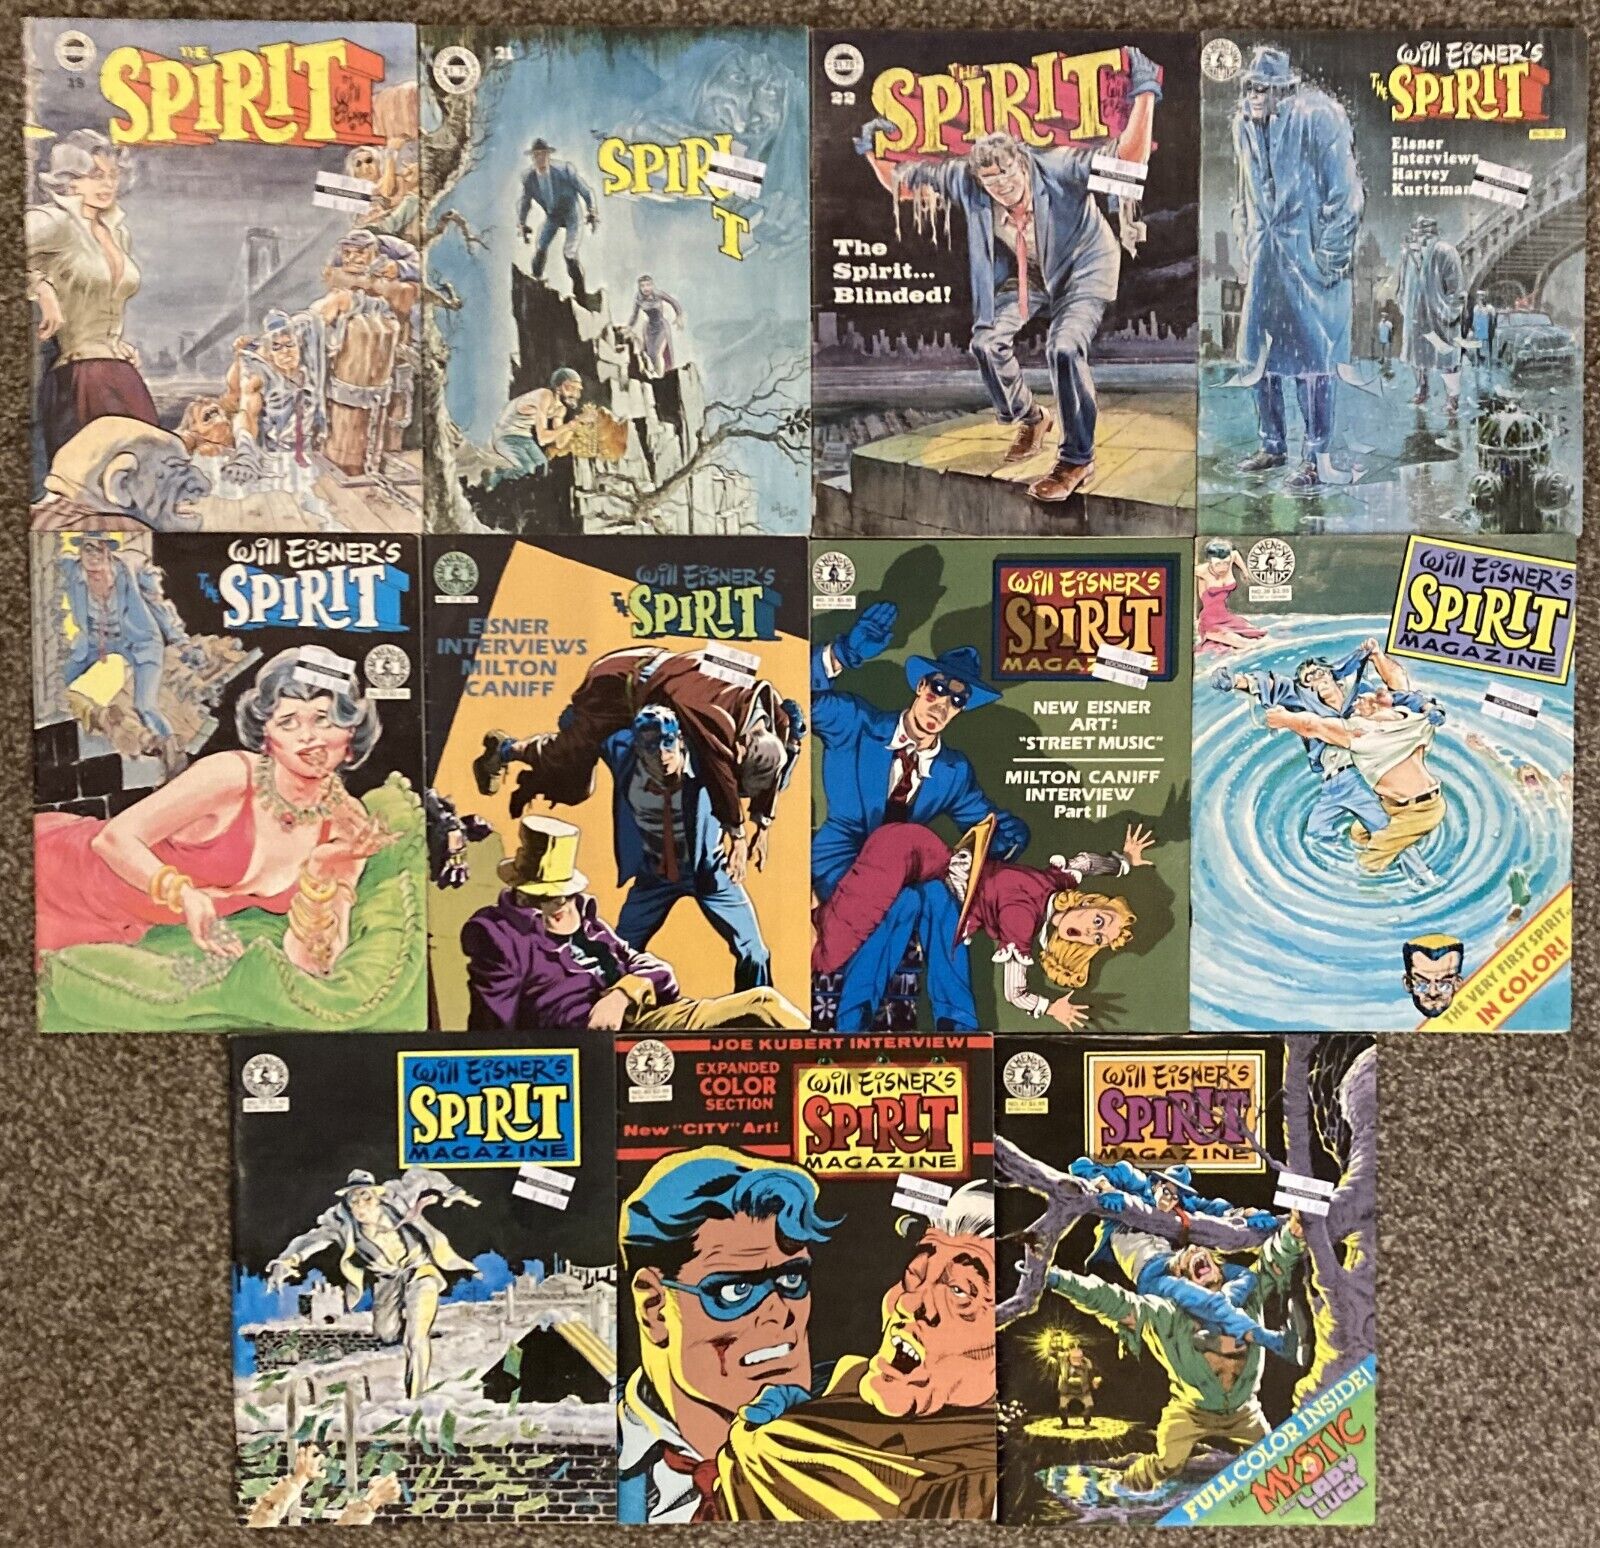 Will Eisner\'s THE SPIRIT Magazine 1978-1983 Lot of 11 Issues Kitchen Sink Press